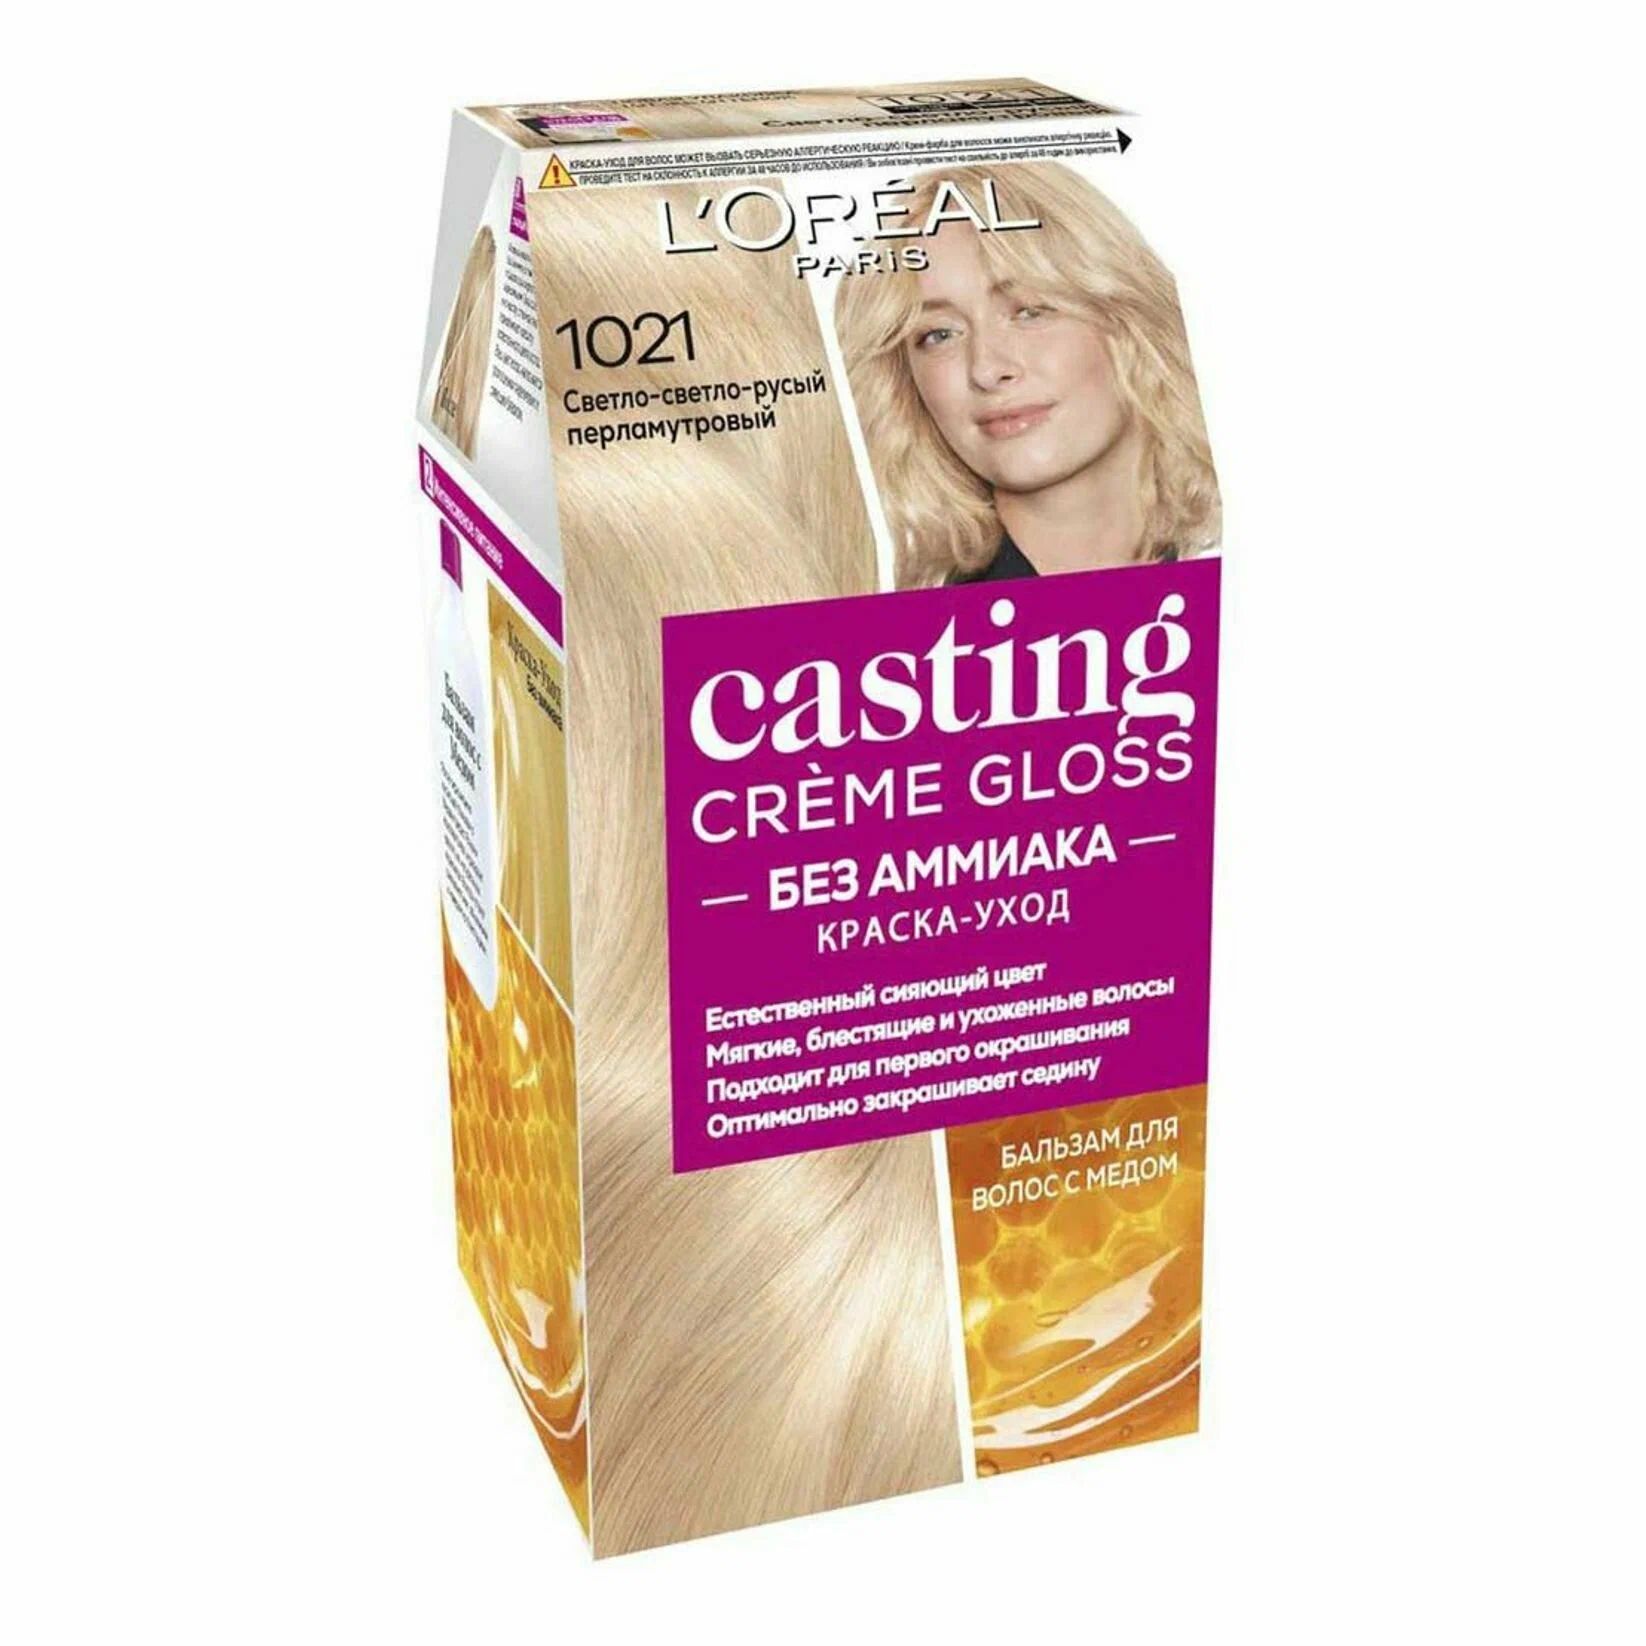 Краска-уход для волос L'Oreal Paris Casting Creme Gloss, 1021 светло-русый, , 180 мл осветлитель для волос l oreal professionnel blond studio platinium plus 500 г